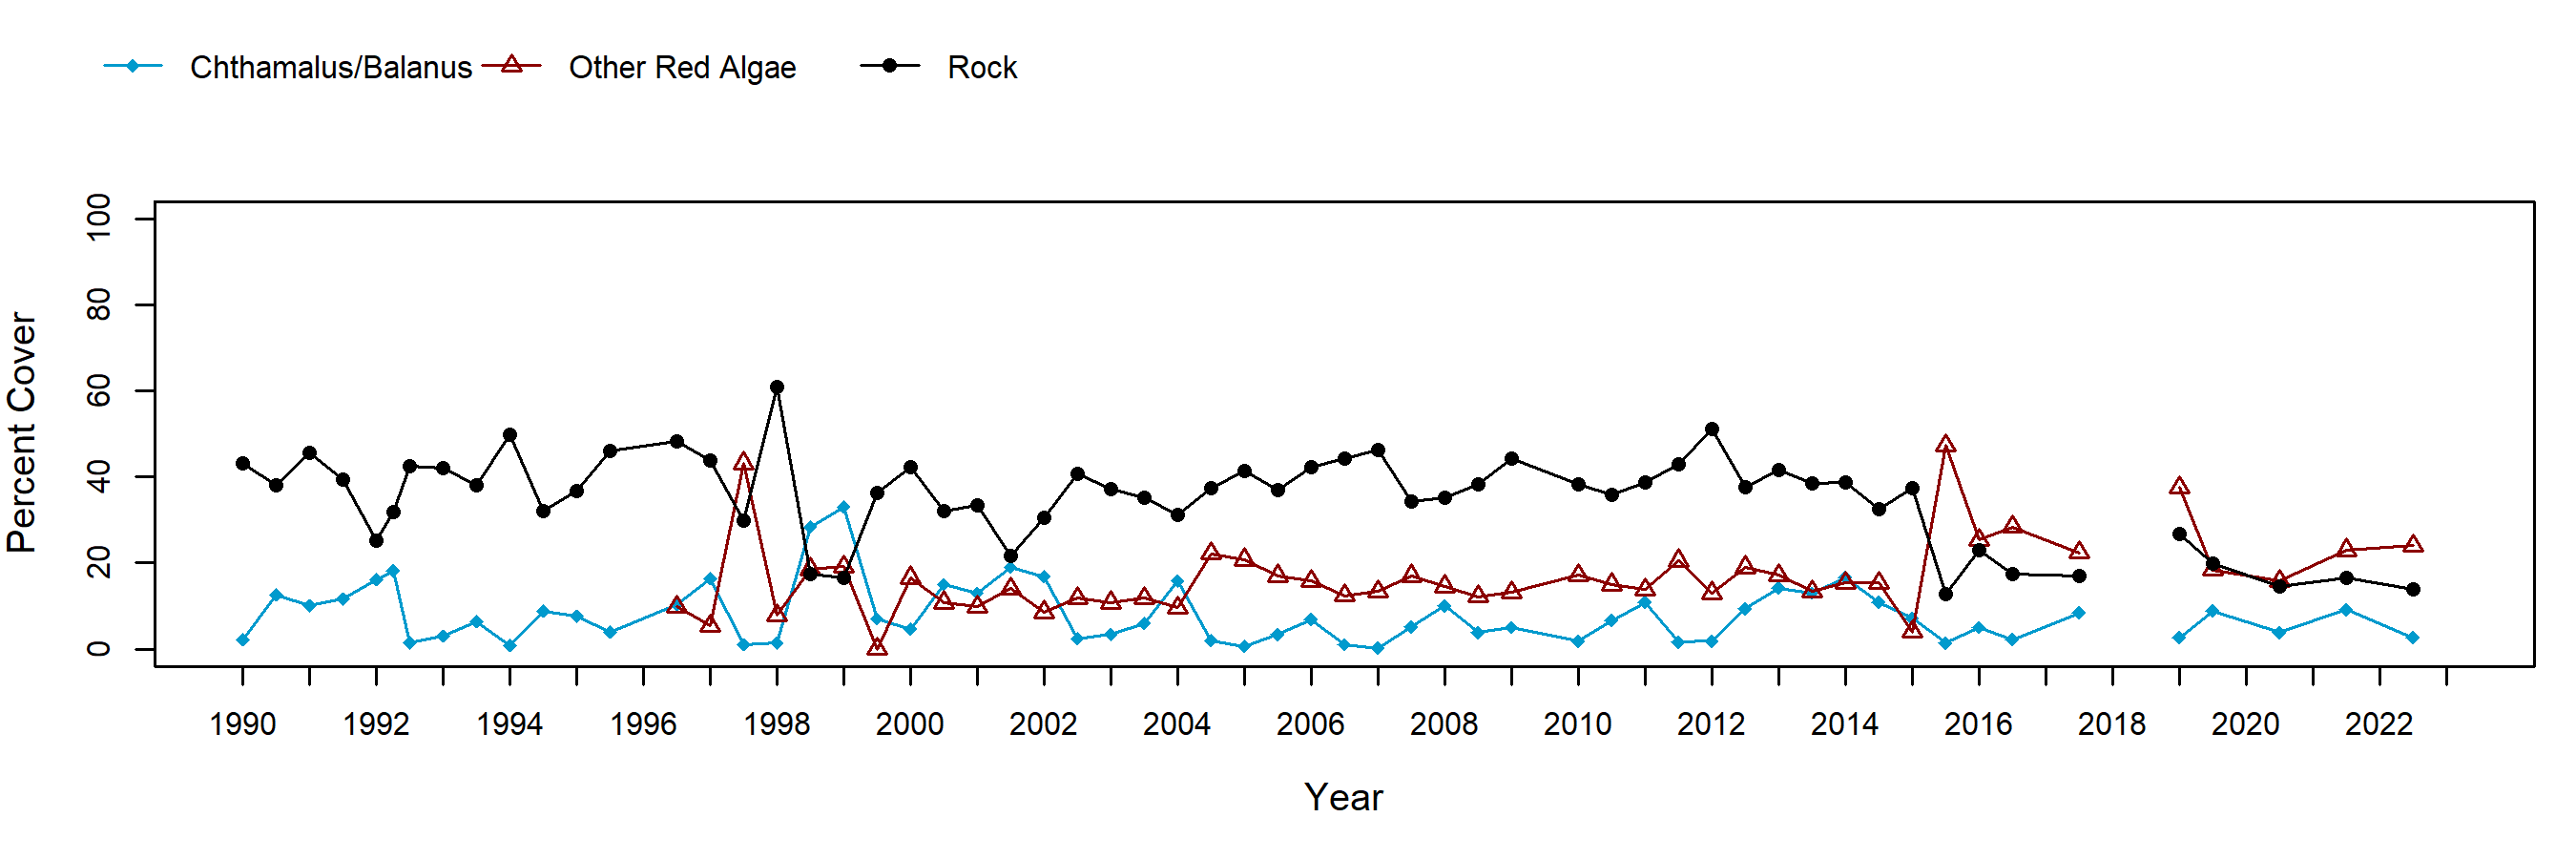 Cabrillo I barnacle trend plot